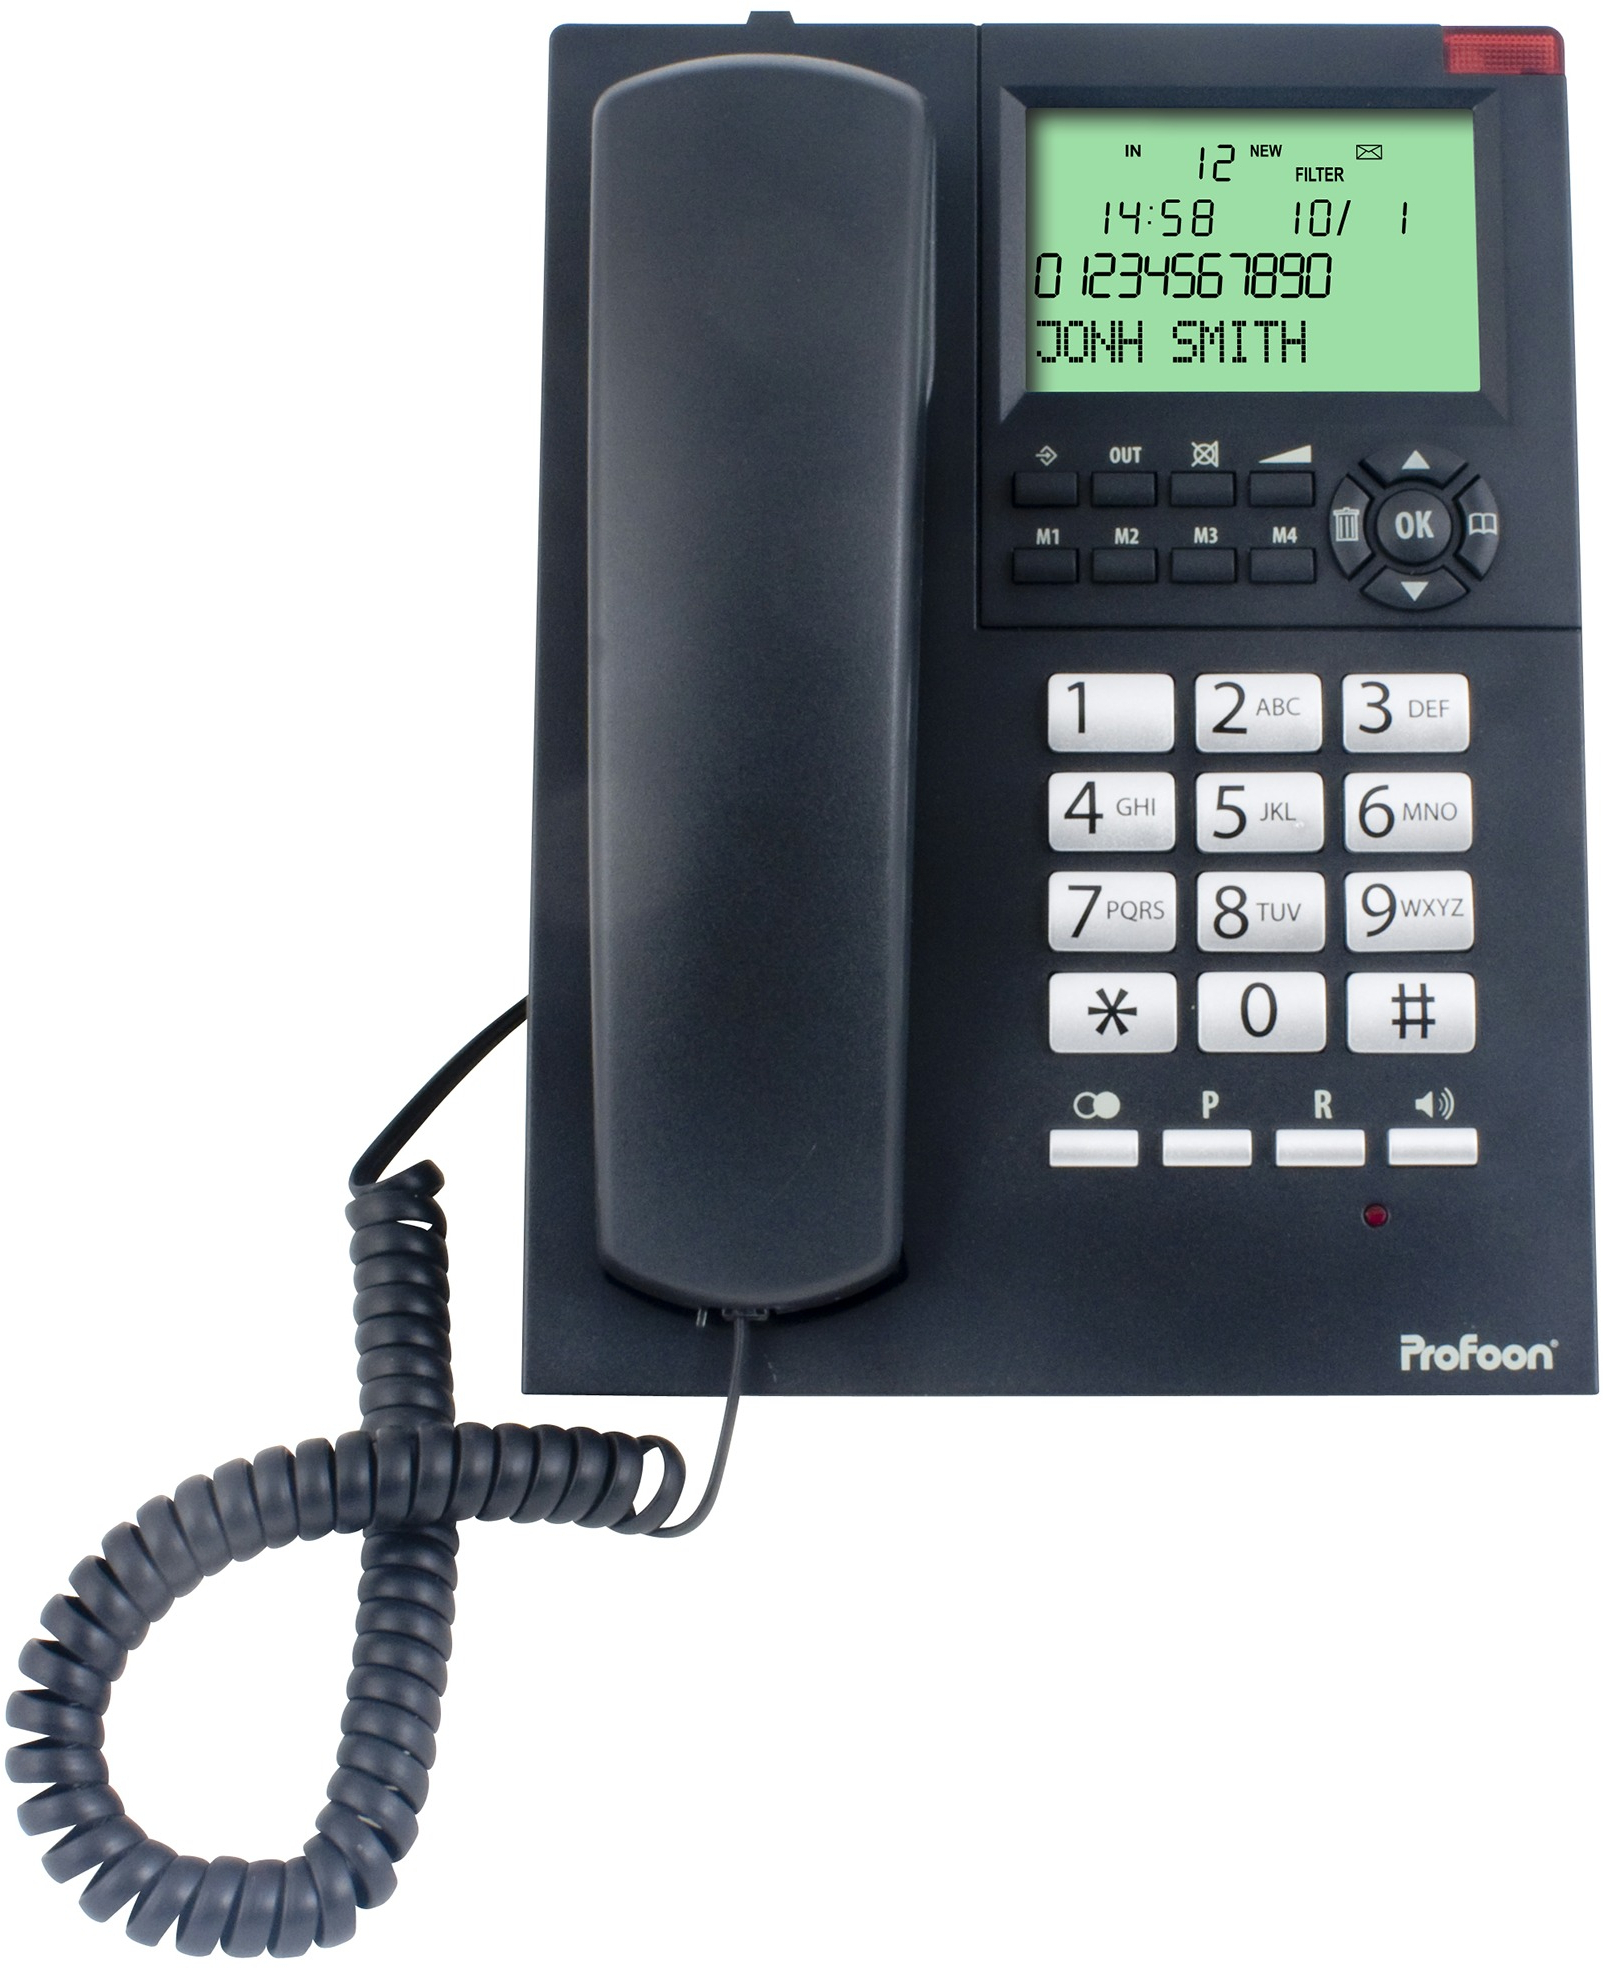 Uitstekend democratische Partij baard Profoon TX-325 Bureautelefoon, LCD, Zwart (TX-325) kopen » Centralpoint